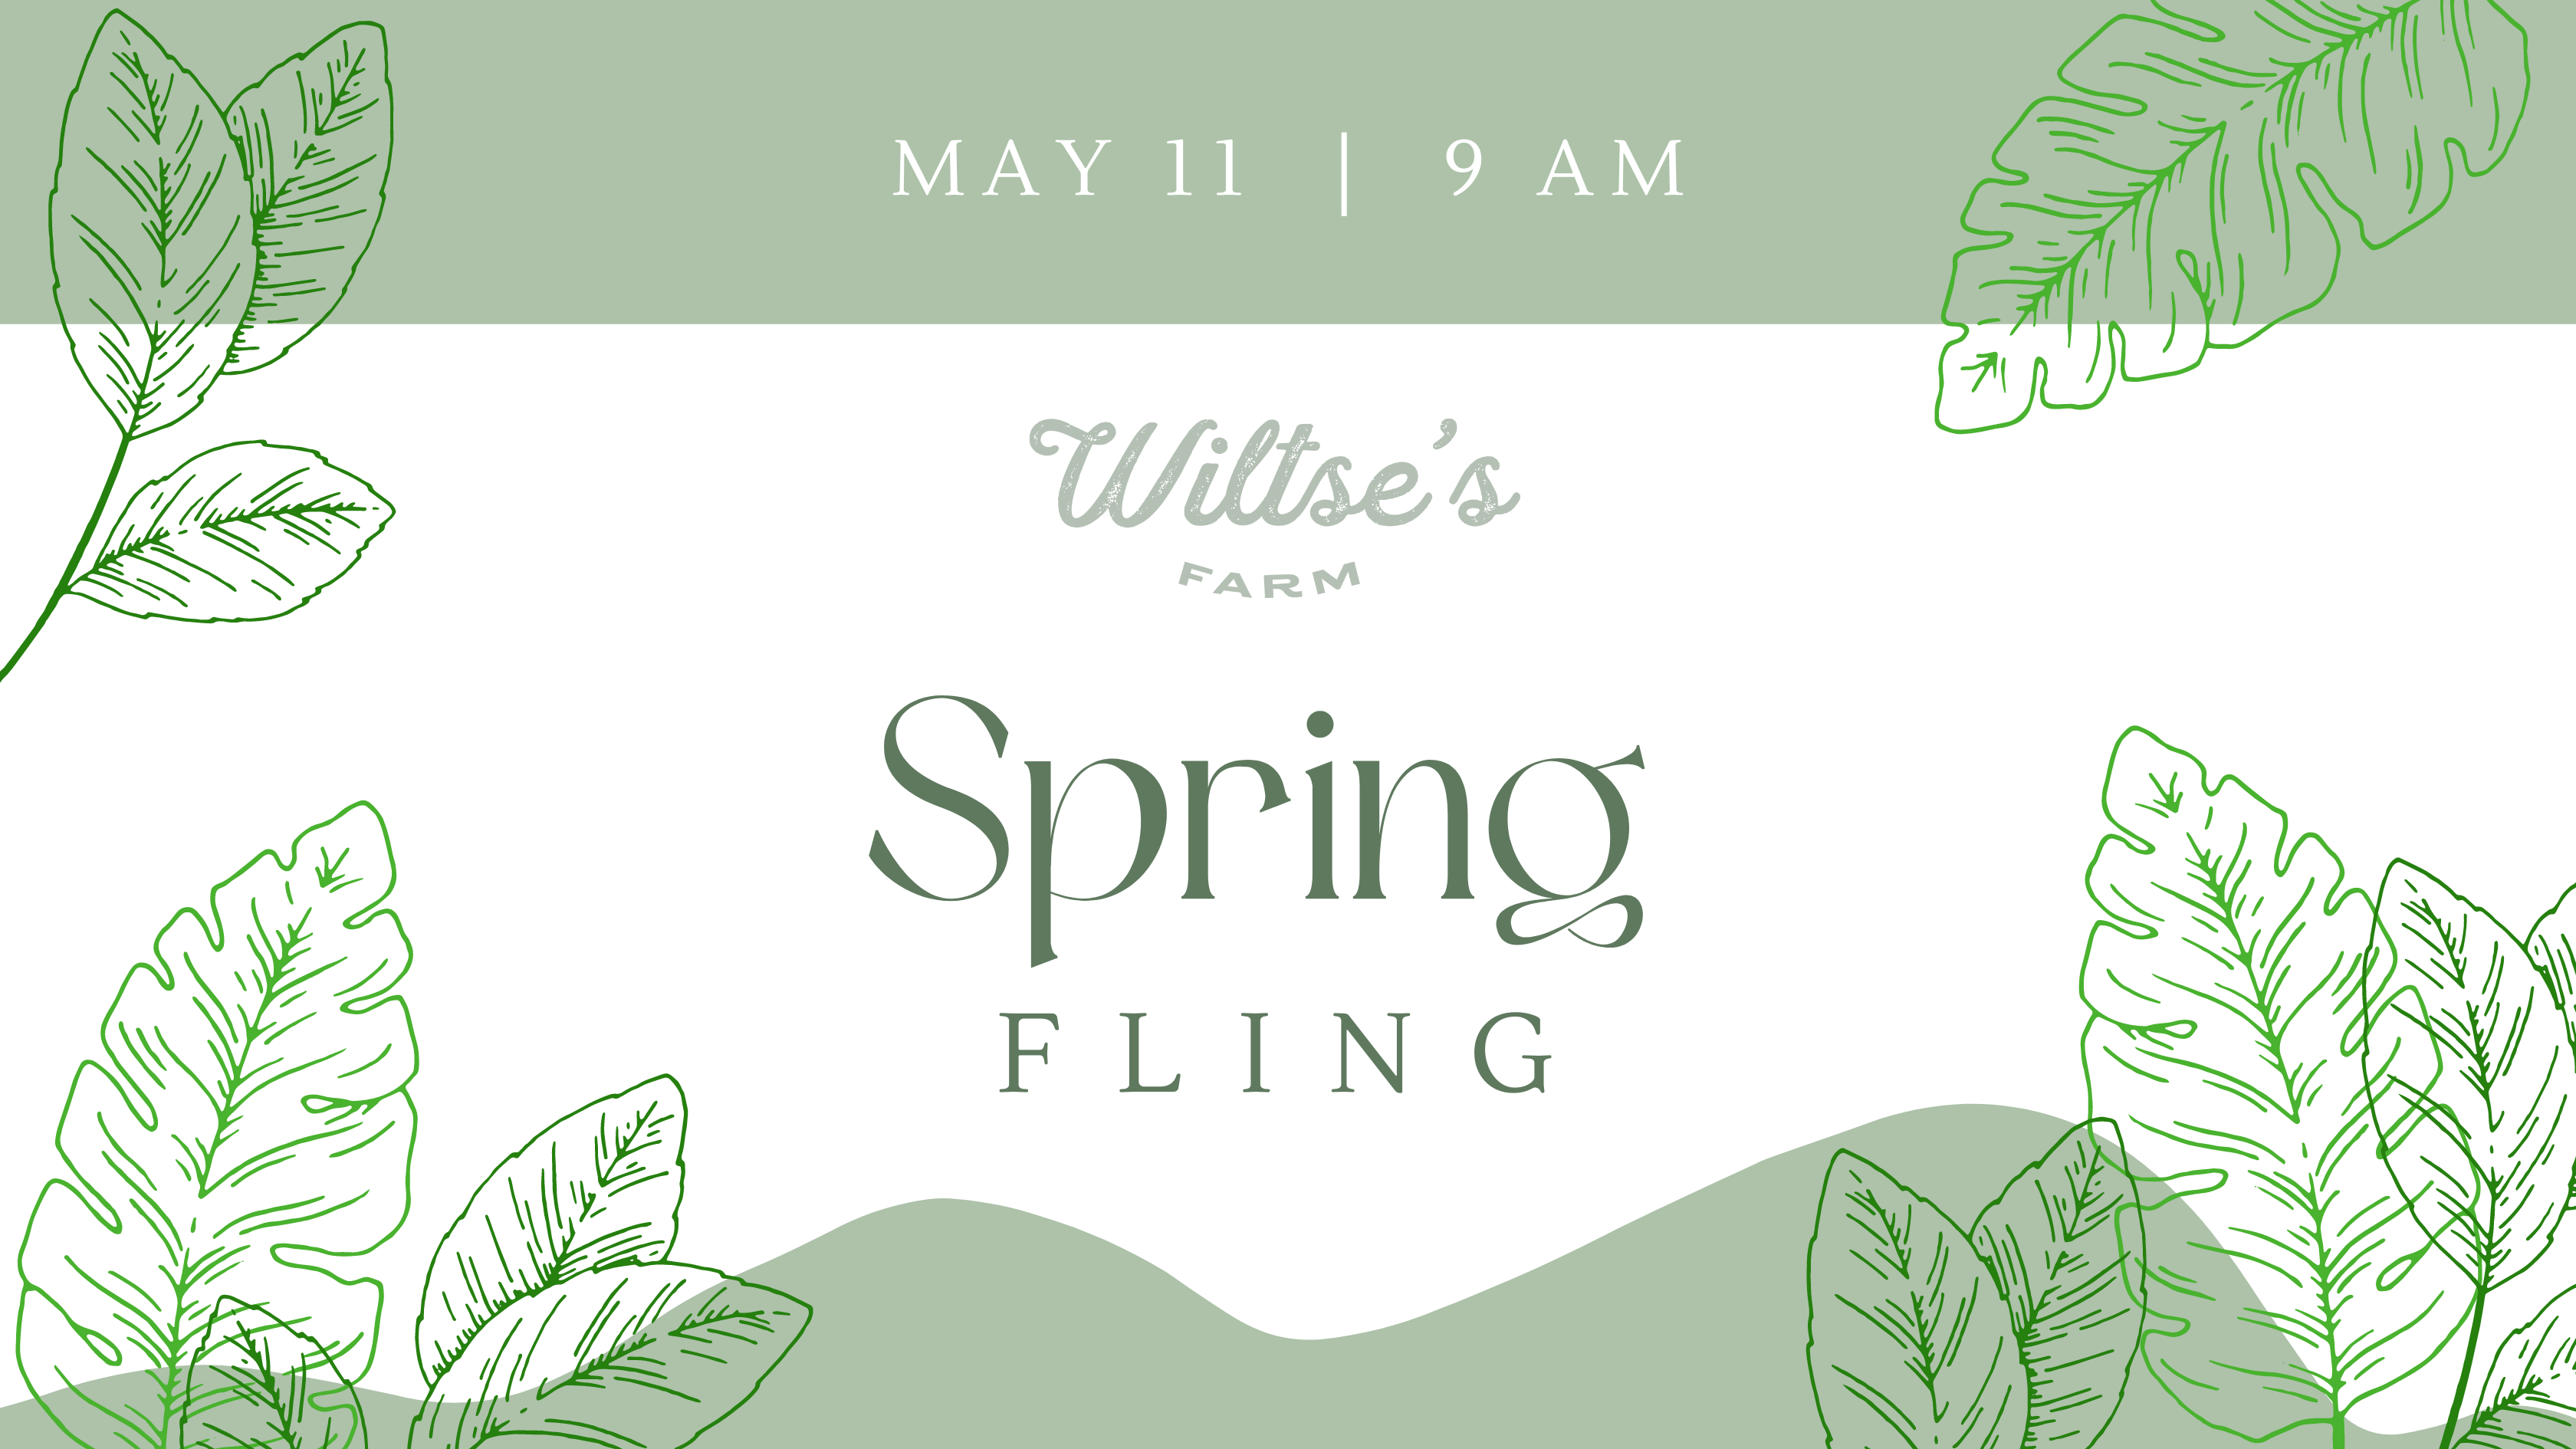 Spring Fling At Wiltse's Farm